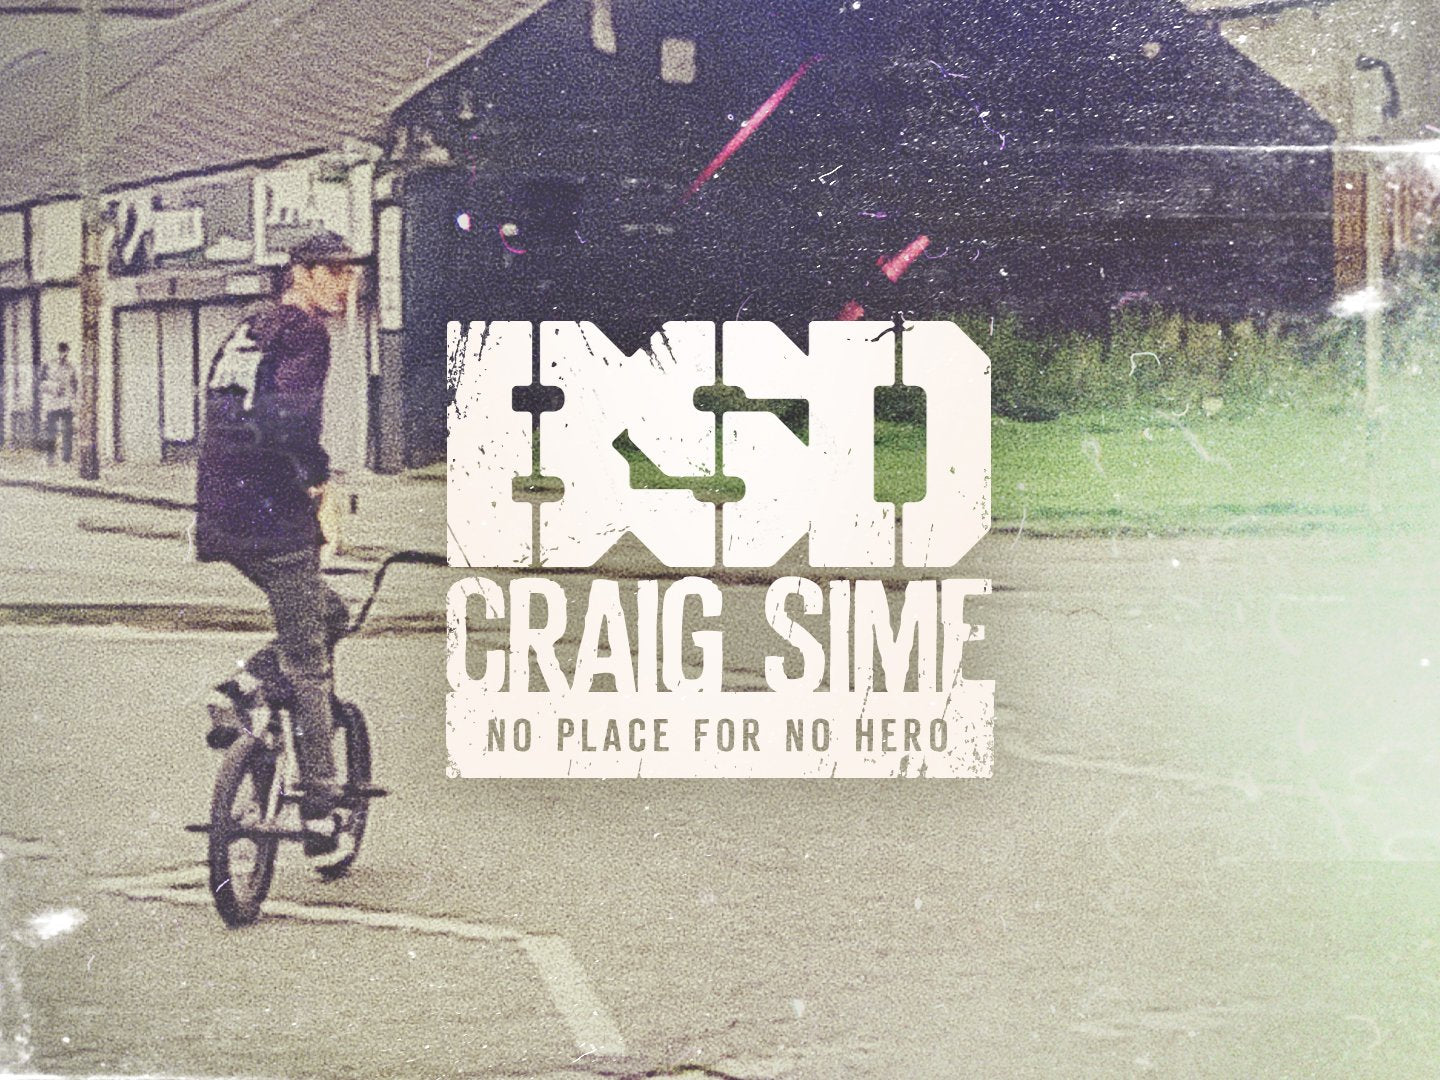 Craig Sime - No Place for No Hero